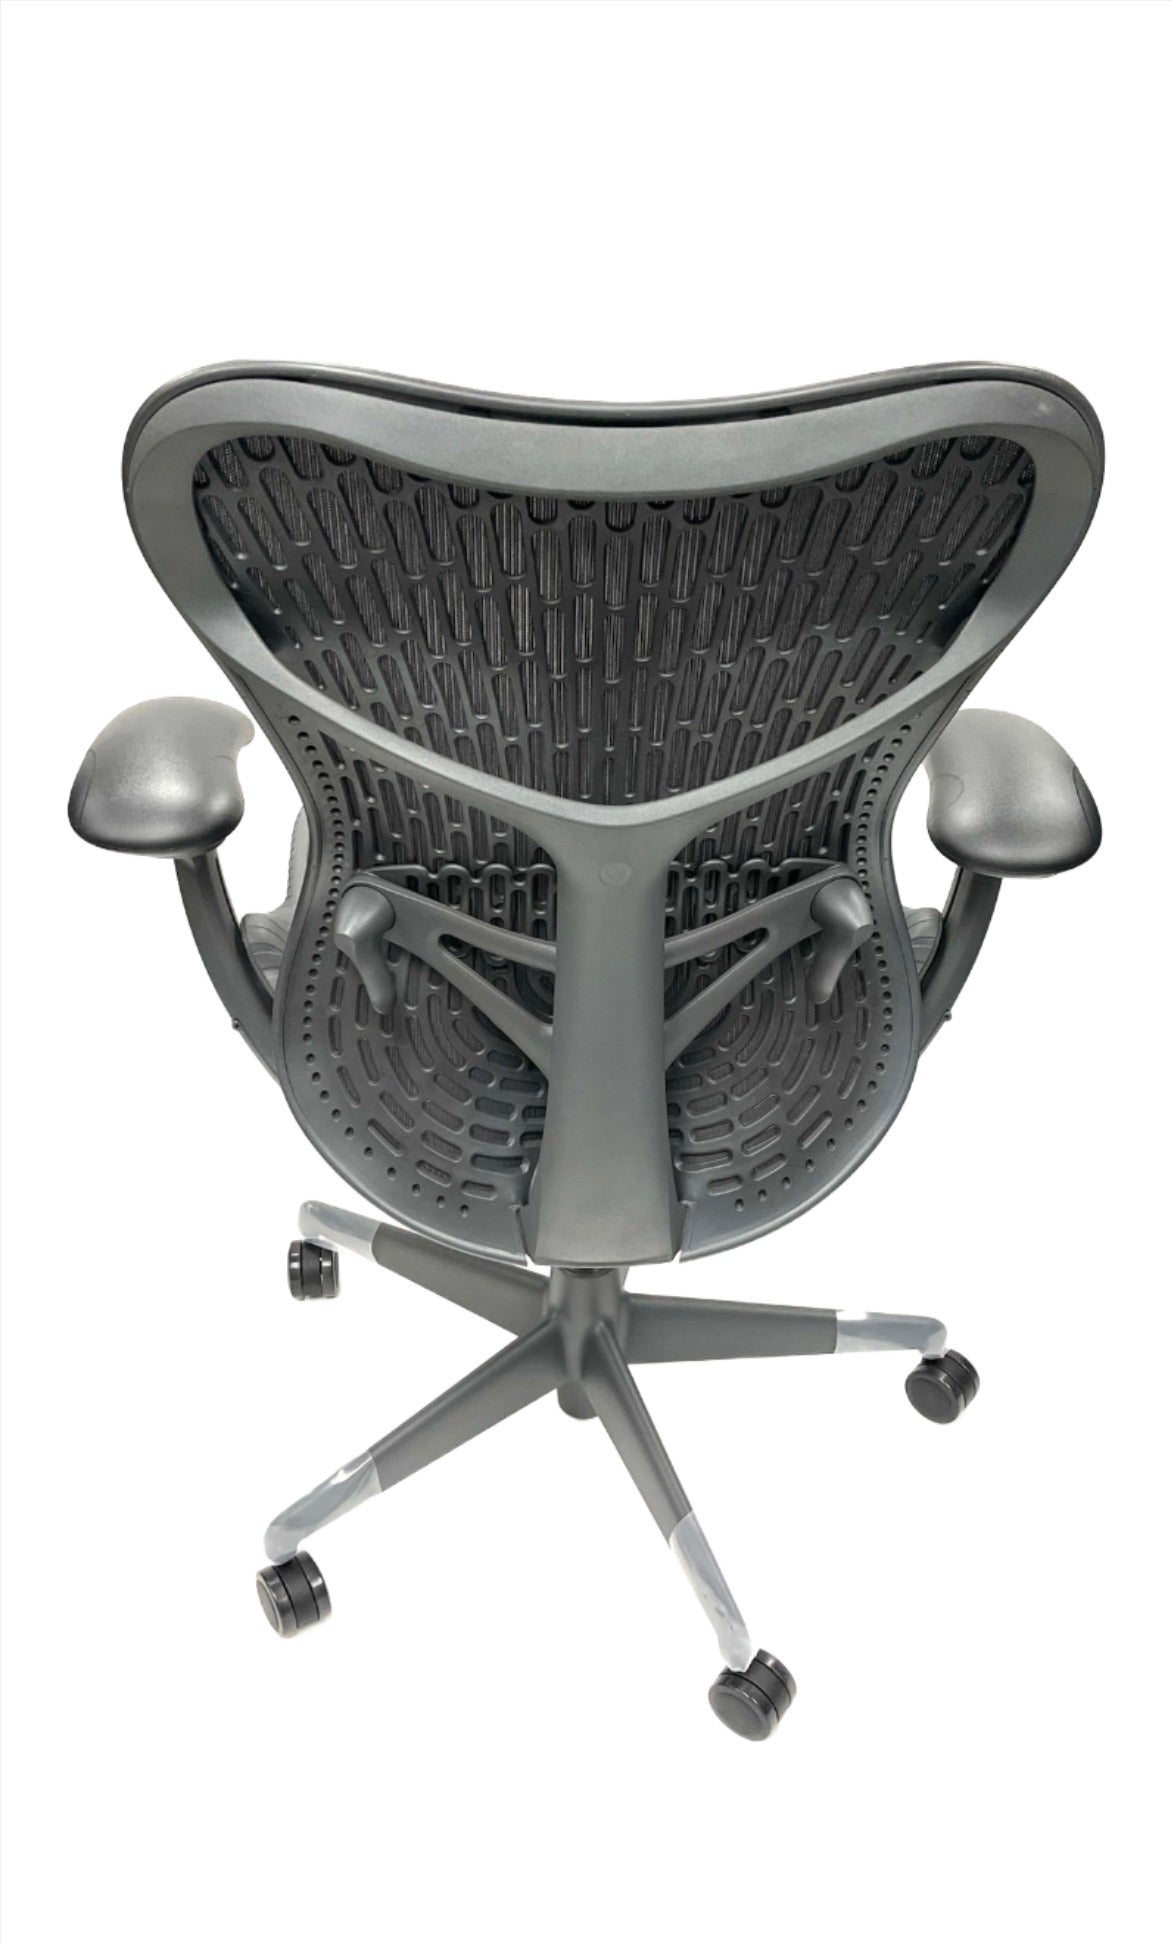 Mirra 2 Task Chair-WB OFFICE SHOP